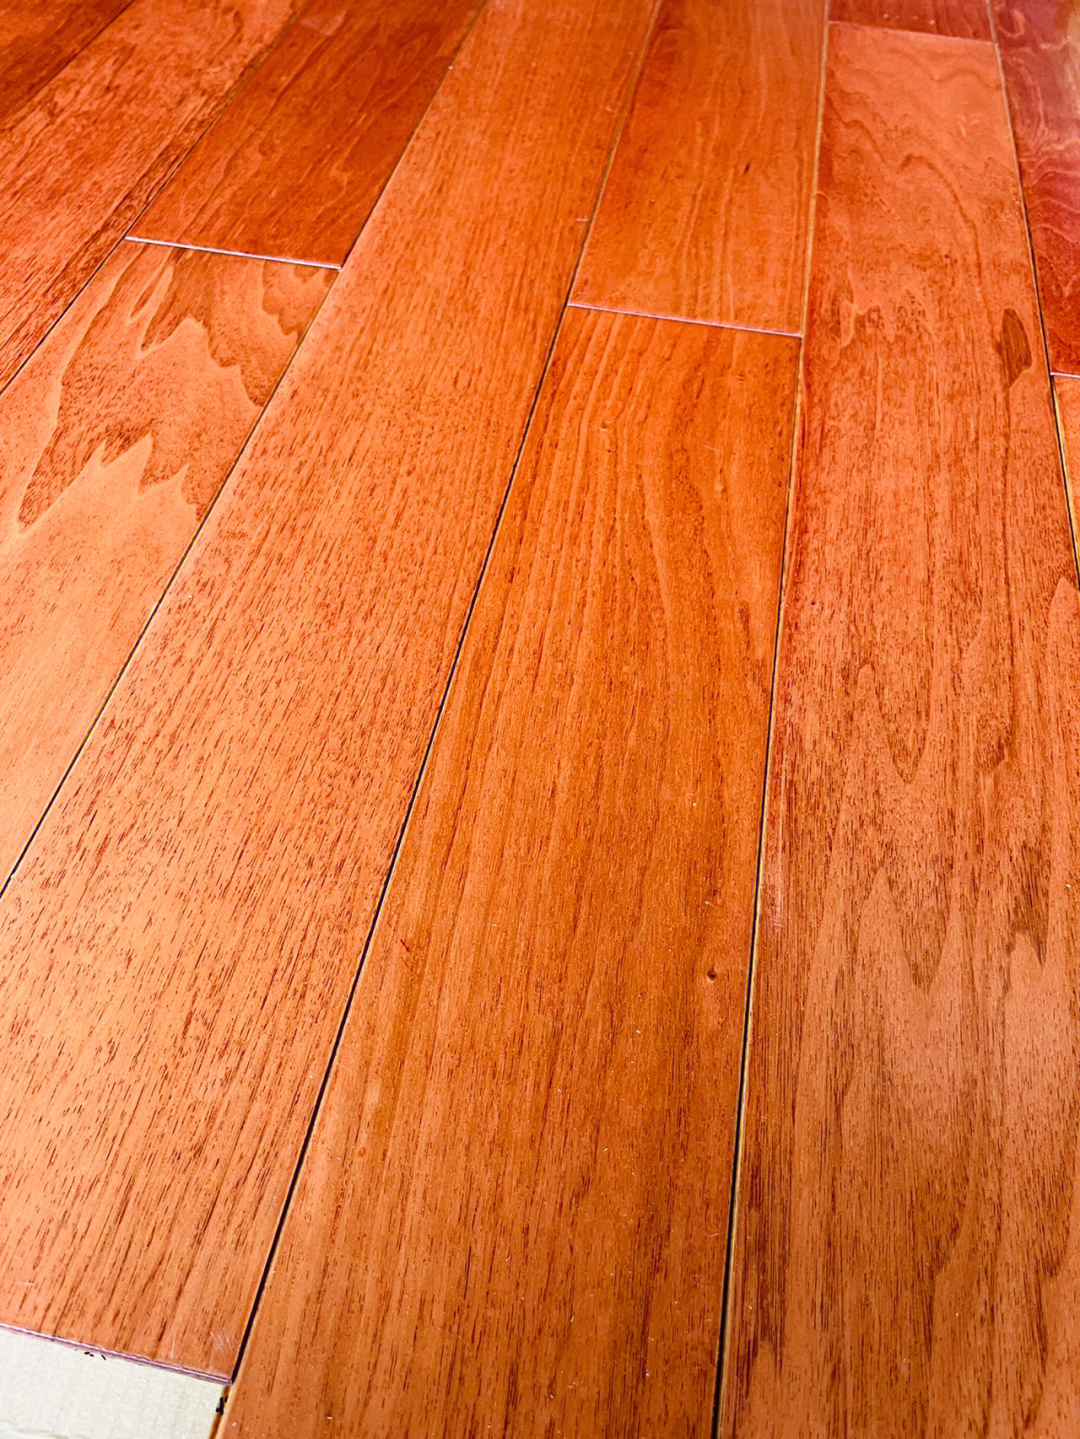 wood flooring木地板_engineered wood flooring_红利地板 强化 印象木